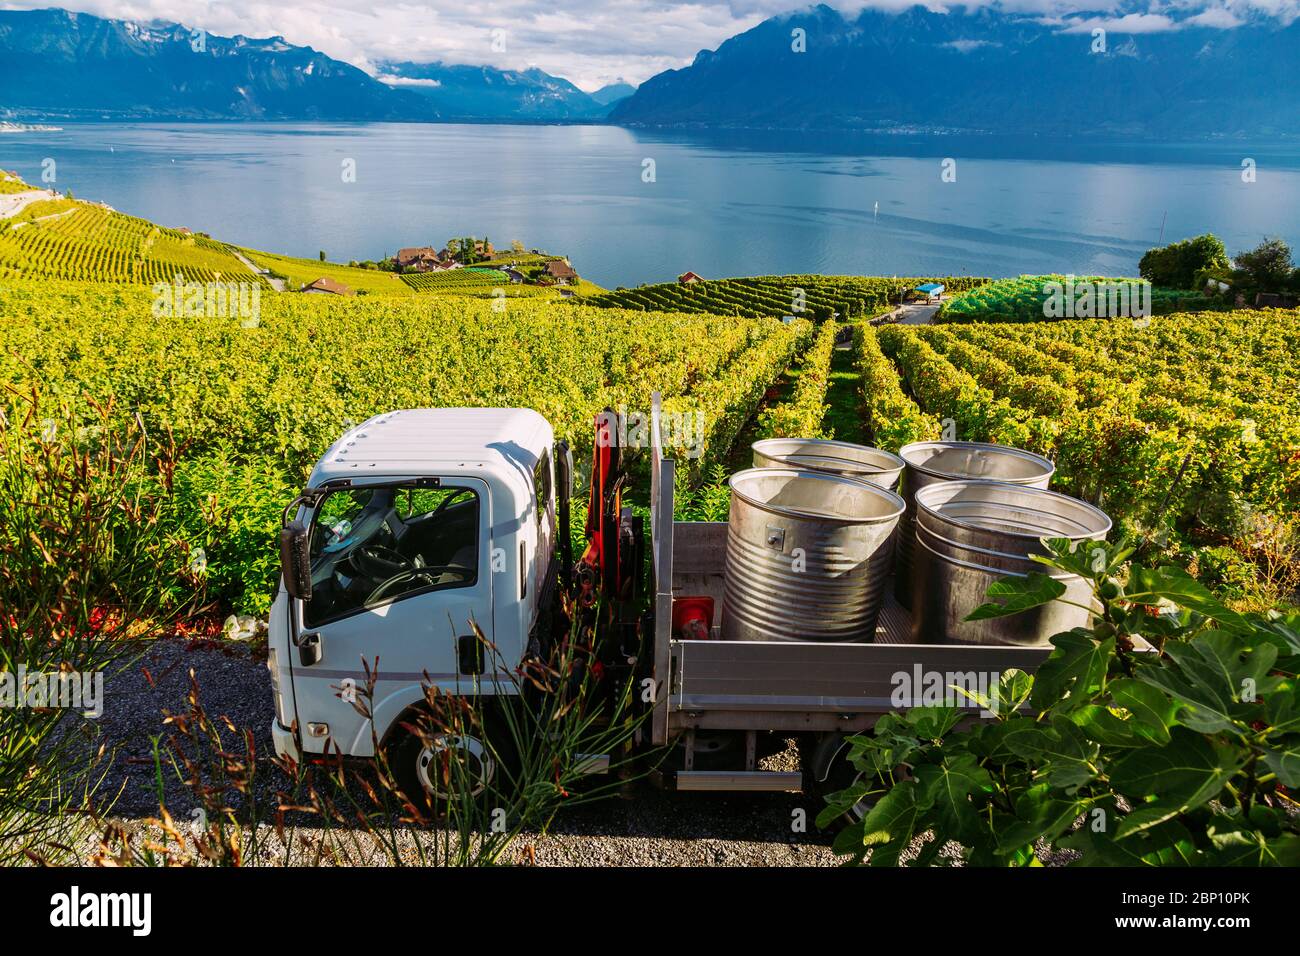 Lavaux, Suisse: Fûts de fruits mûrs placés sur une voiture pendant la récolte du raisin. Vue de la vigne tarraces de Lavaux dans le canton de Vaud Banque D'Images